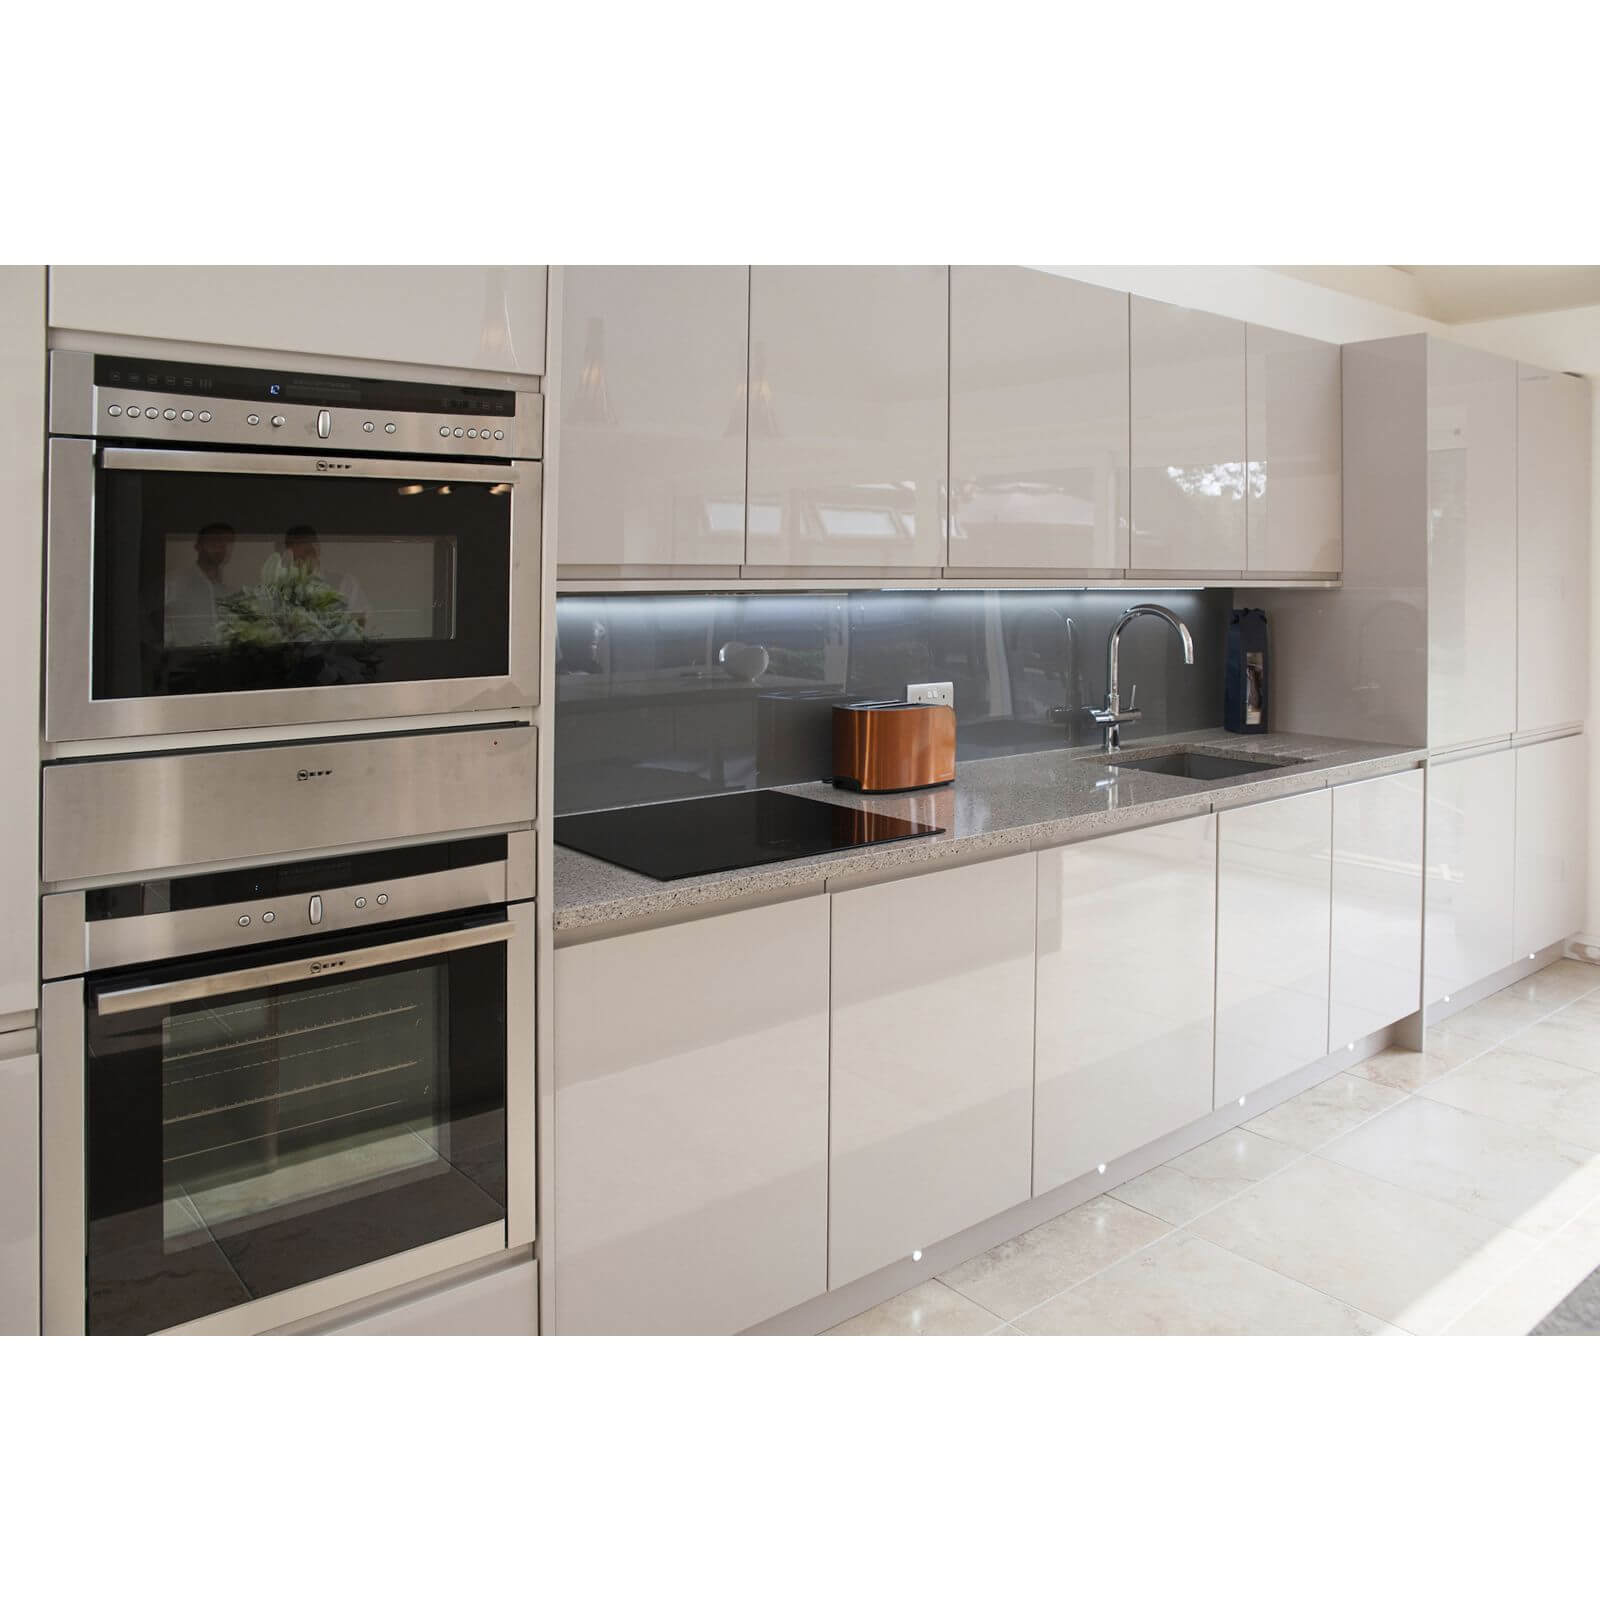 Zenolite Acrylic Kitchen Splashback Panel - 2440 x 605 x 4mm - Grey